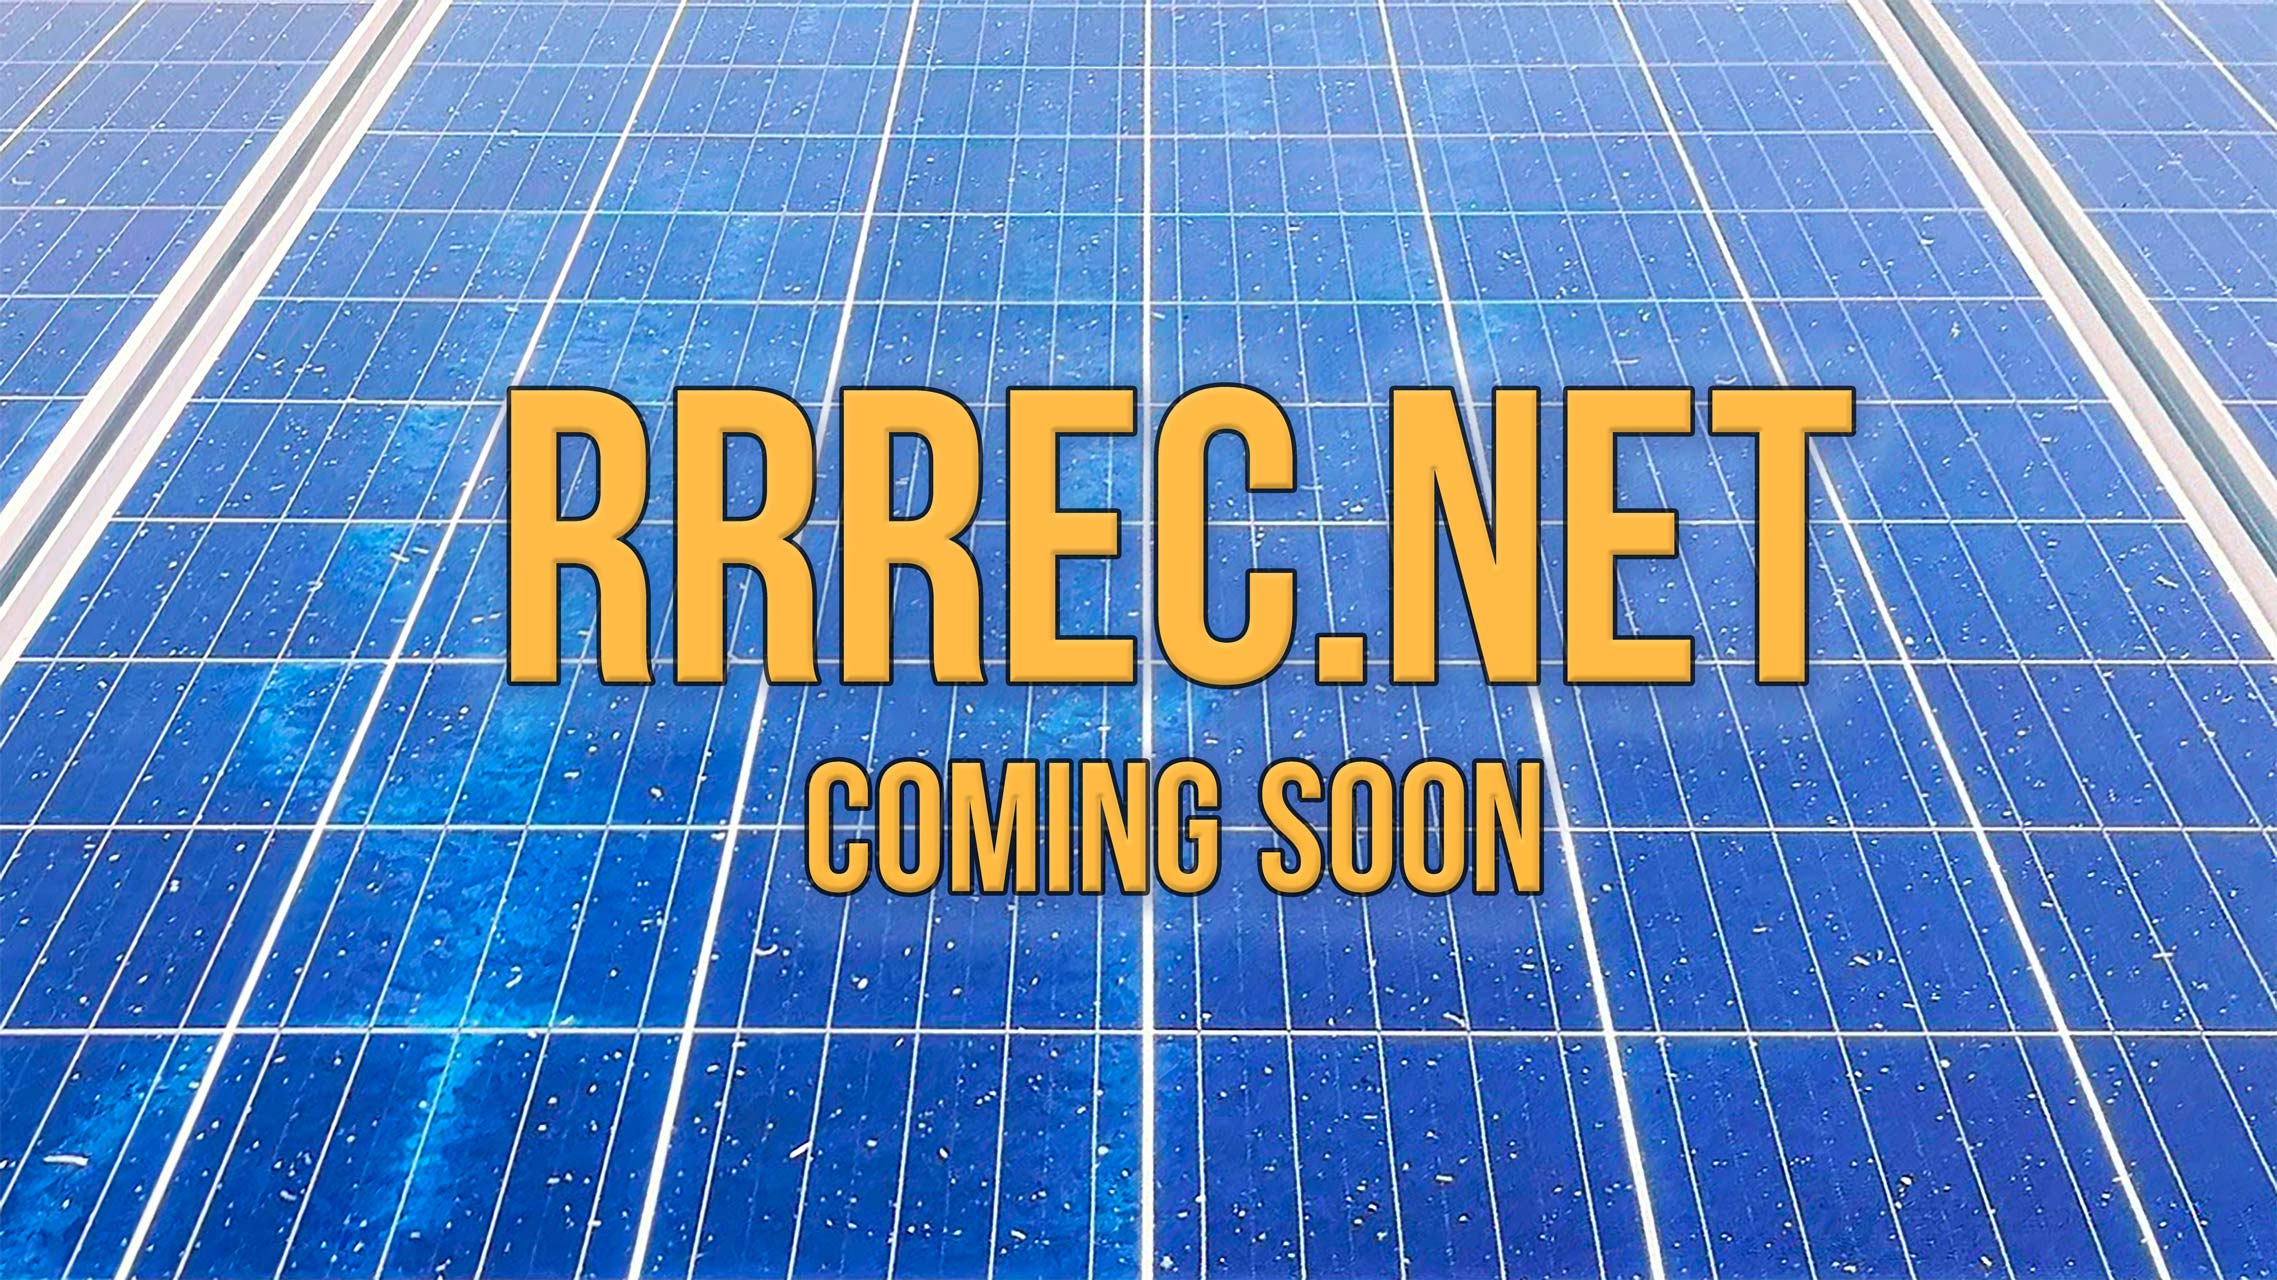 RRREC.NET Coming Soon